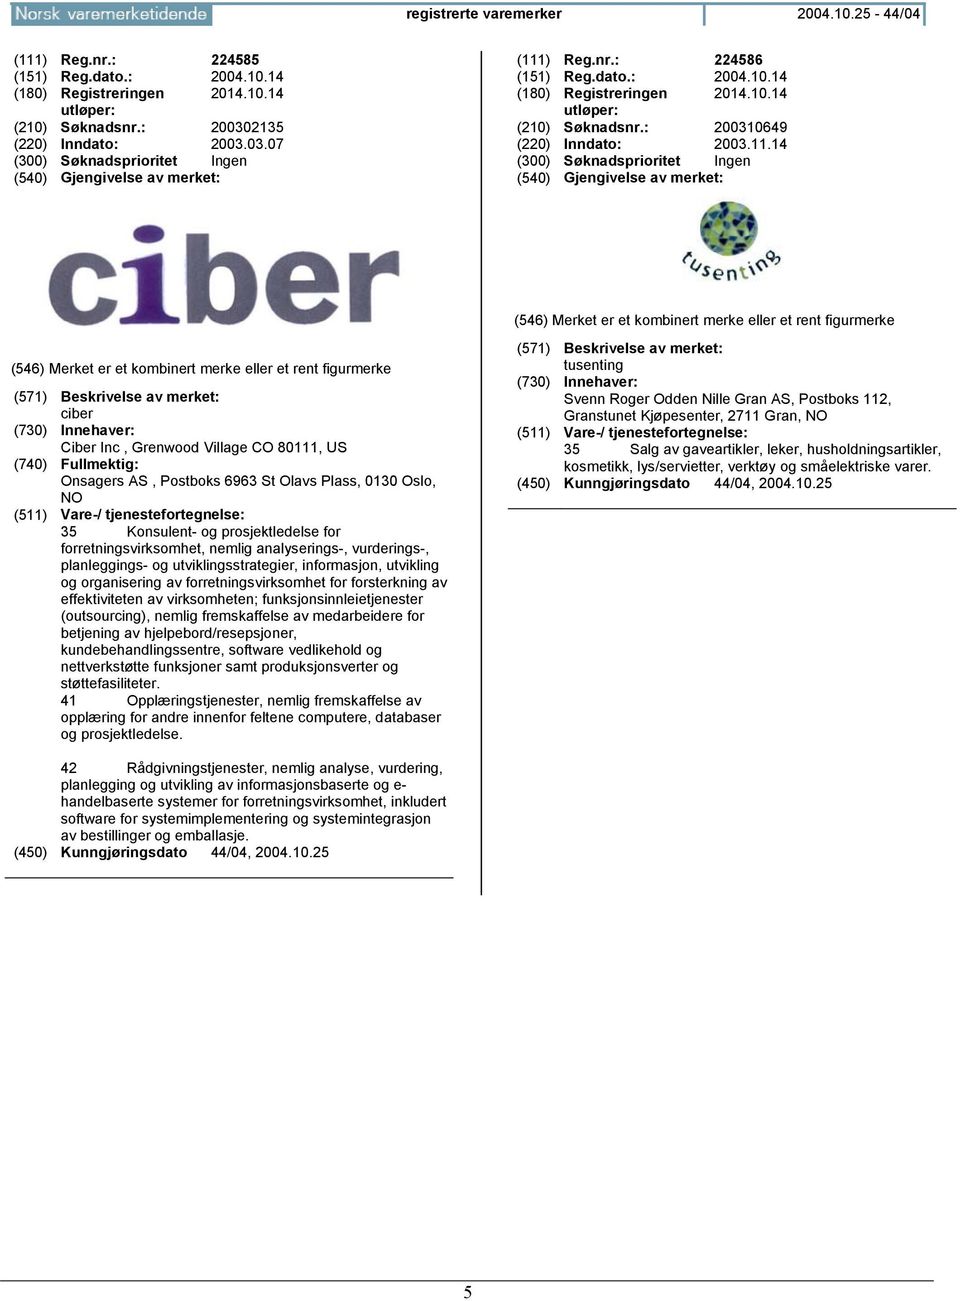 14 ciber Ciber Inc, Grenwood Village CO 80111, US Onsagers AS, Postboks 6963 St Olavs Plass, 0130 Oslo, NO 35 Konsulent- og prosjektledelse for forretningsvirksomhet, nemlig analyserings-,